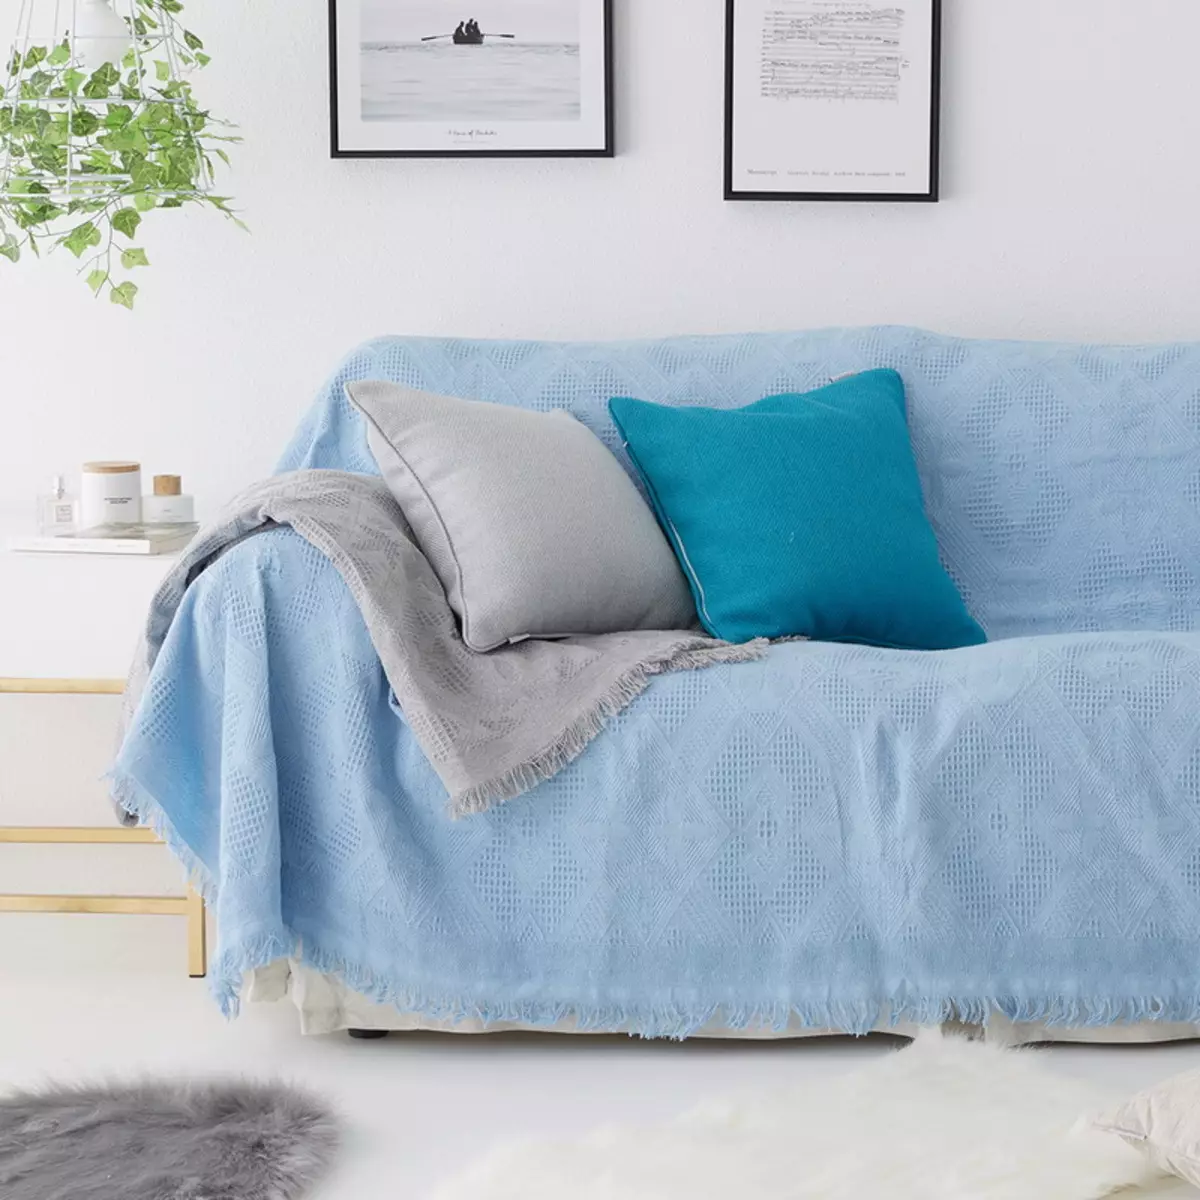 Kaso sa sofa IKEA: Seleksyon ng bedspreads para sa sulok sofas walang armrests, universal cover at iba pang mga pagpipilian 8963_40